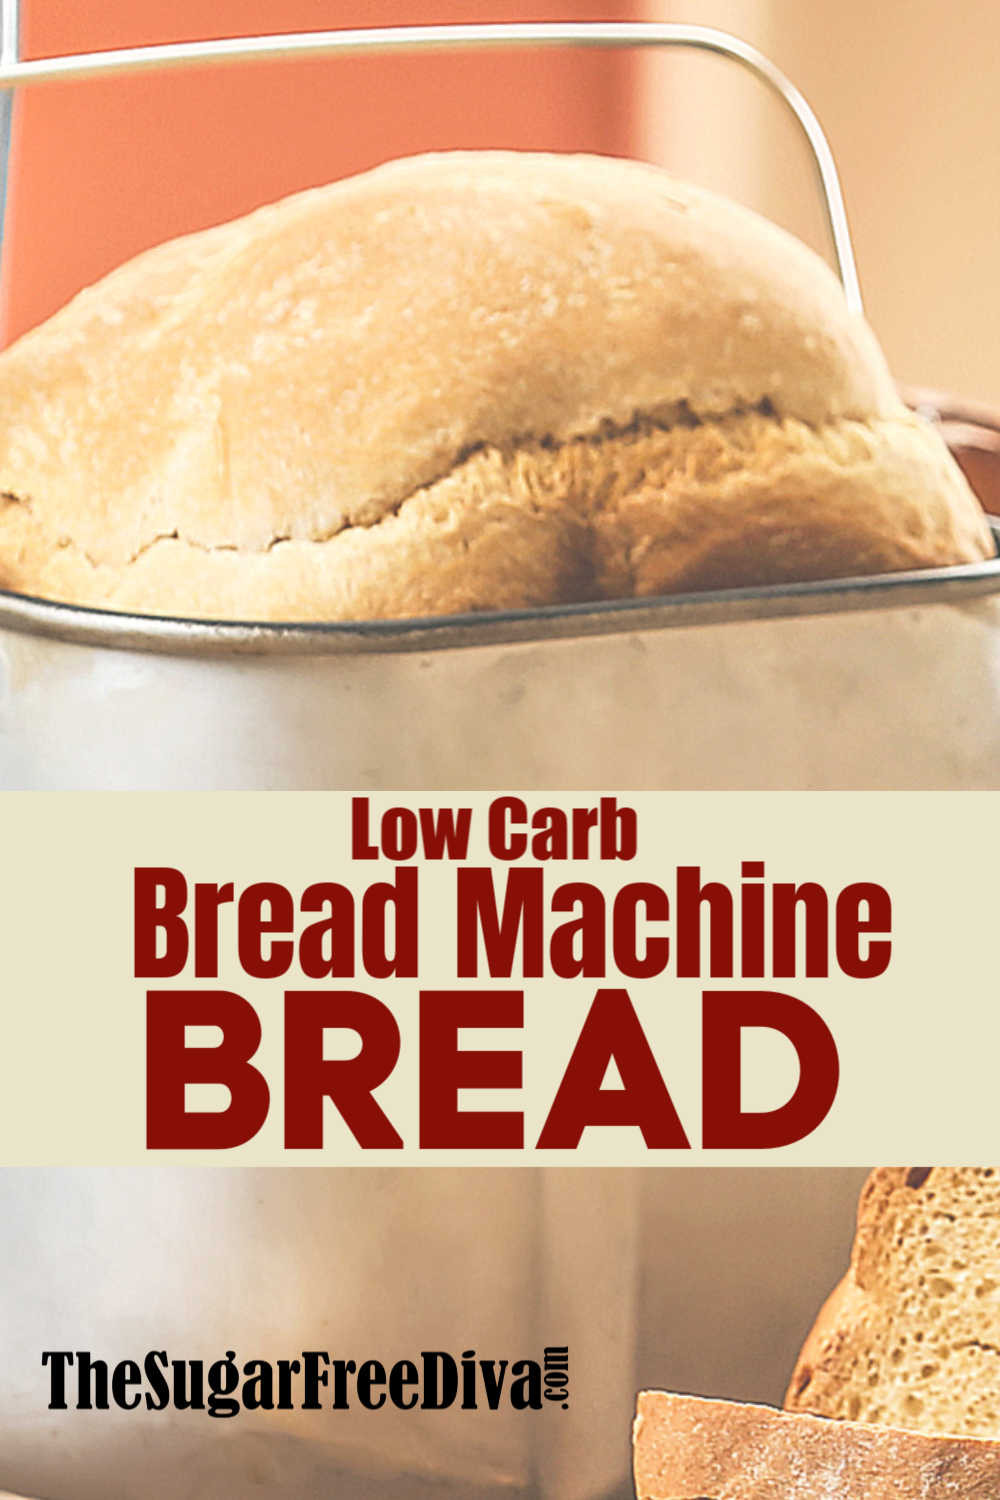 Bread Machine Low Carb Bread
 Low Carb Bread Machine Bread THE SUGAR FREE DIVA